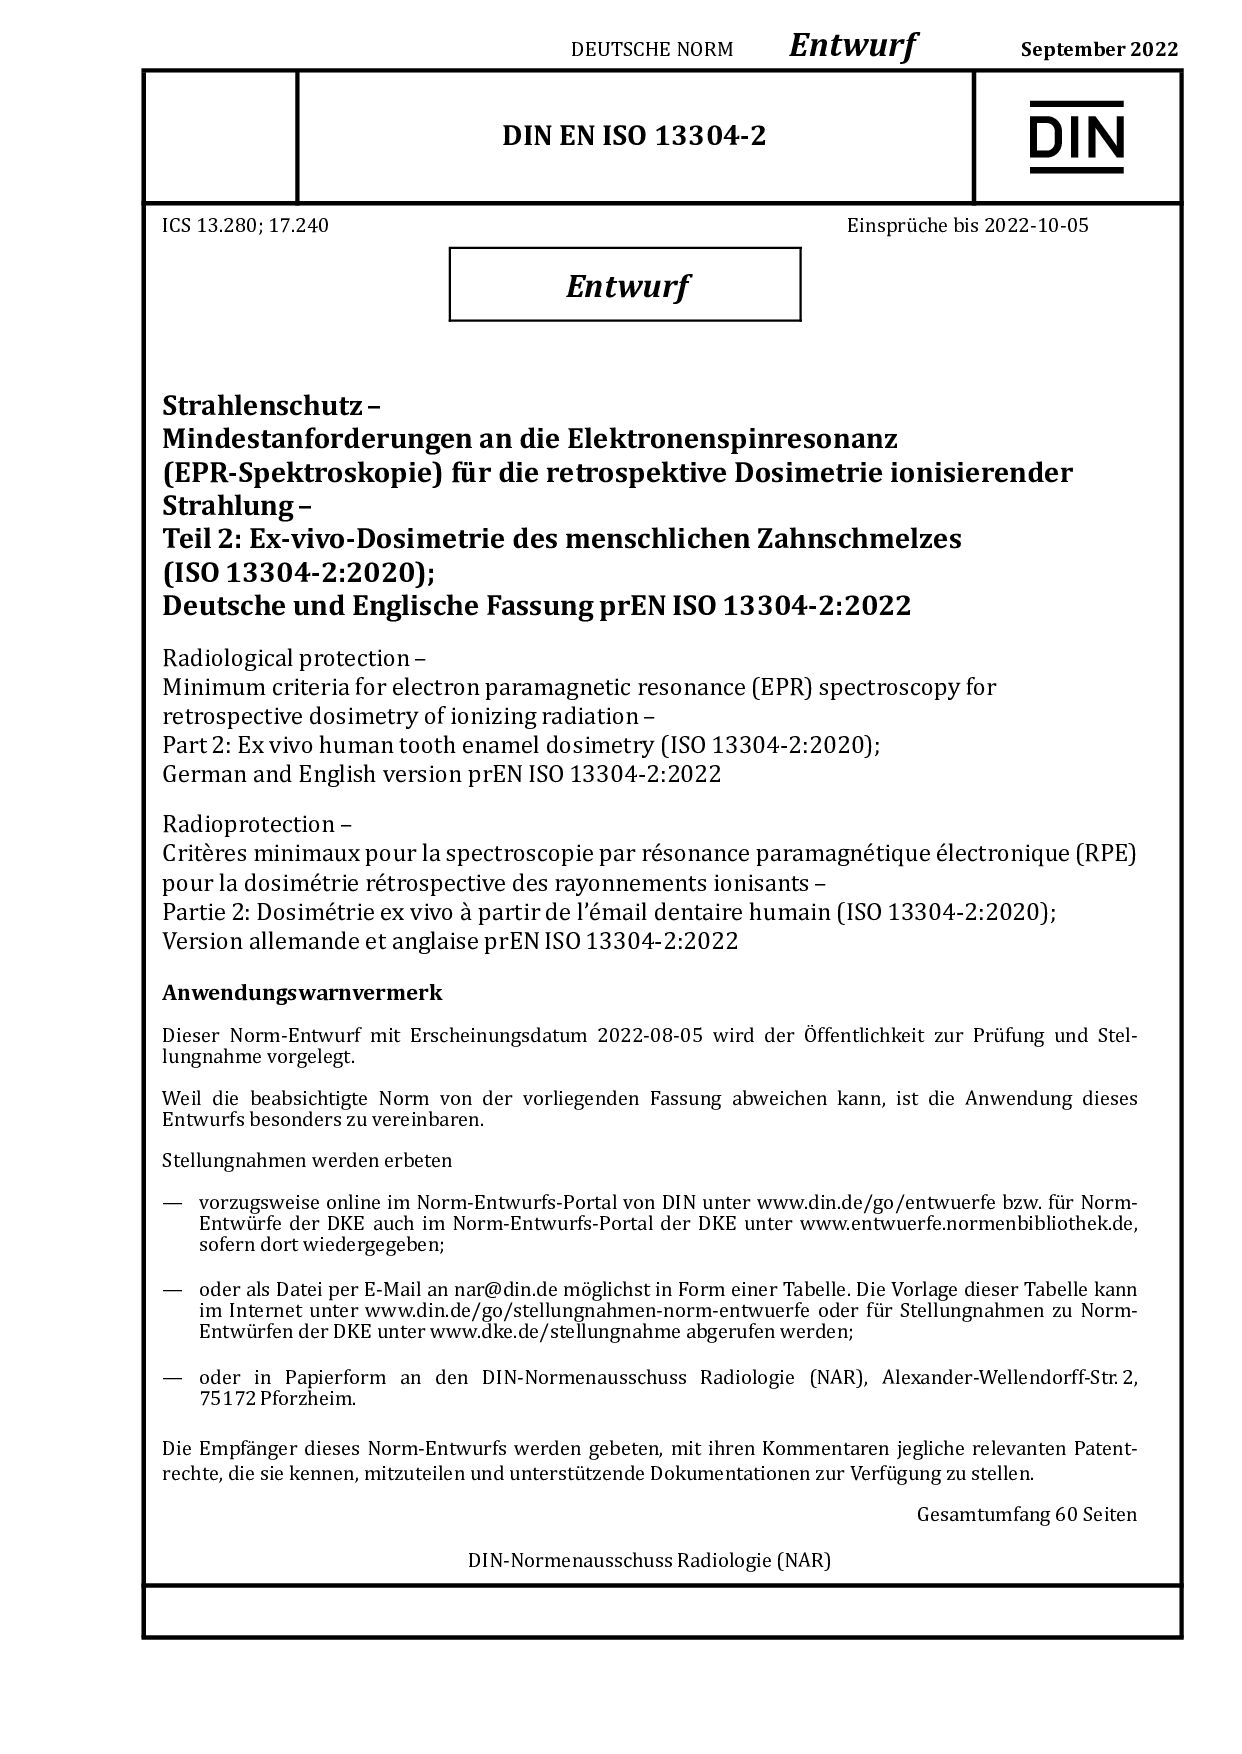 DIN EN ISO 13304-2 E:2022-09封面图